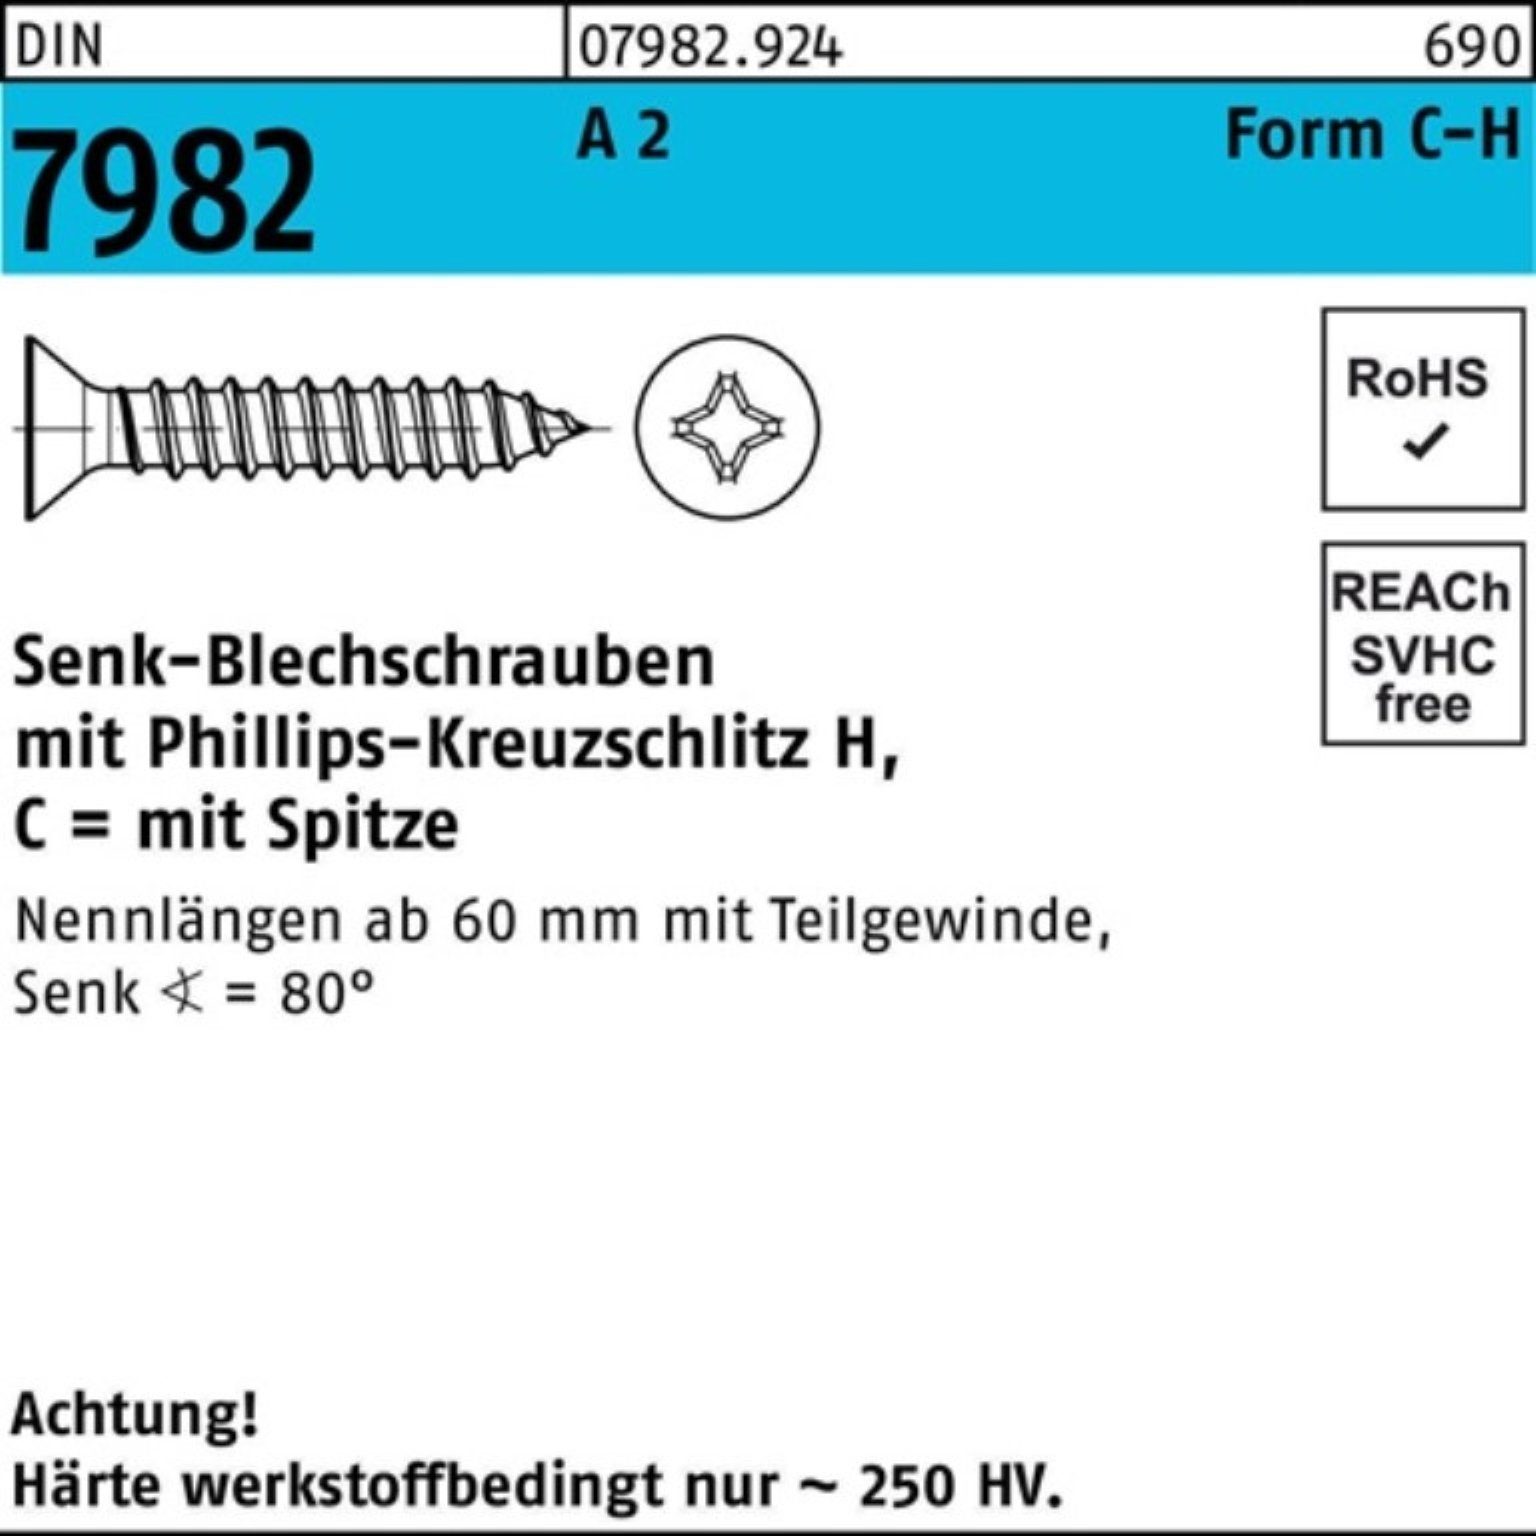 Reyher Schraube 100er Pack Senkblechschraube 100 St A DIN 2 7982 PH/Spitze C 13-H 3,5x